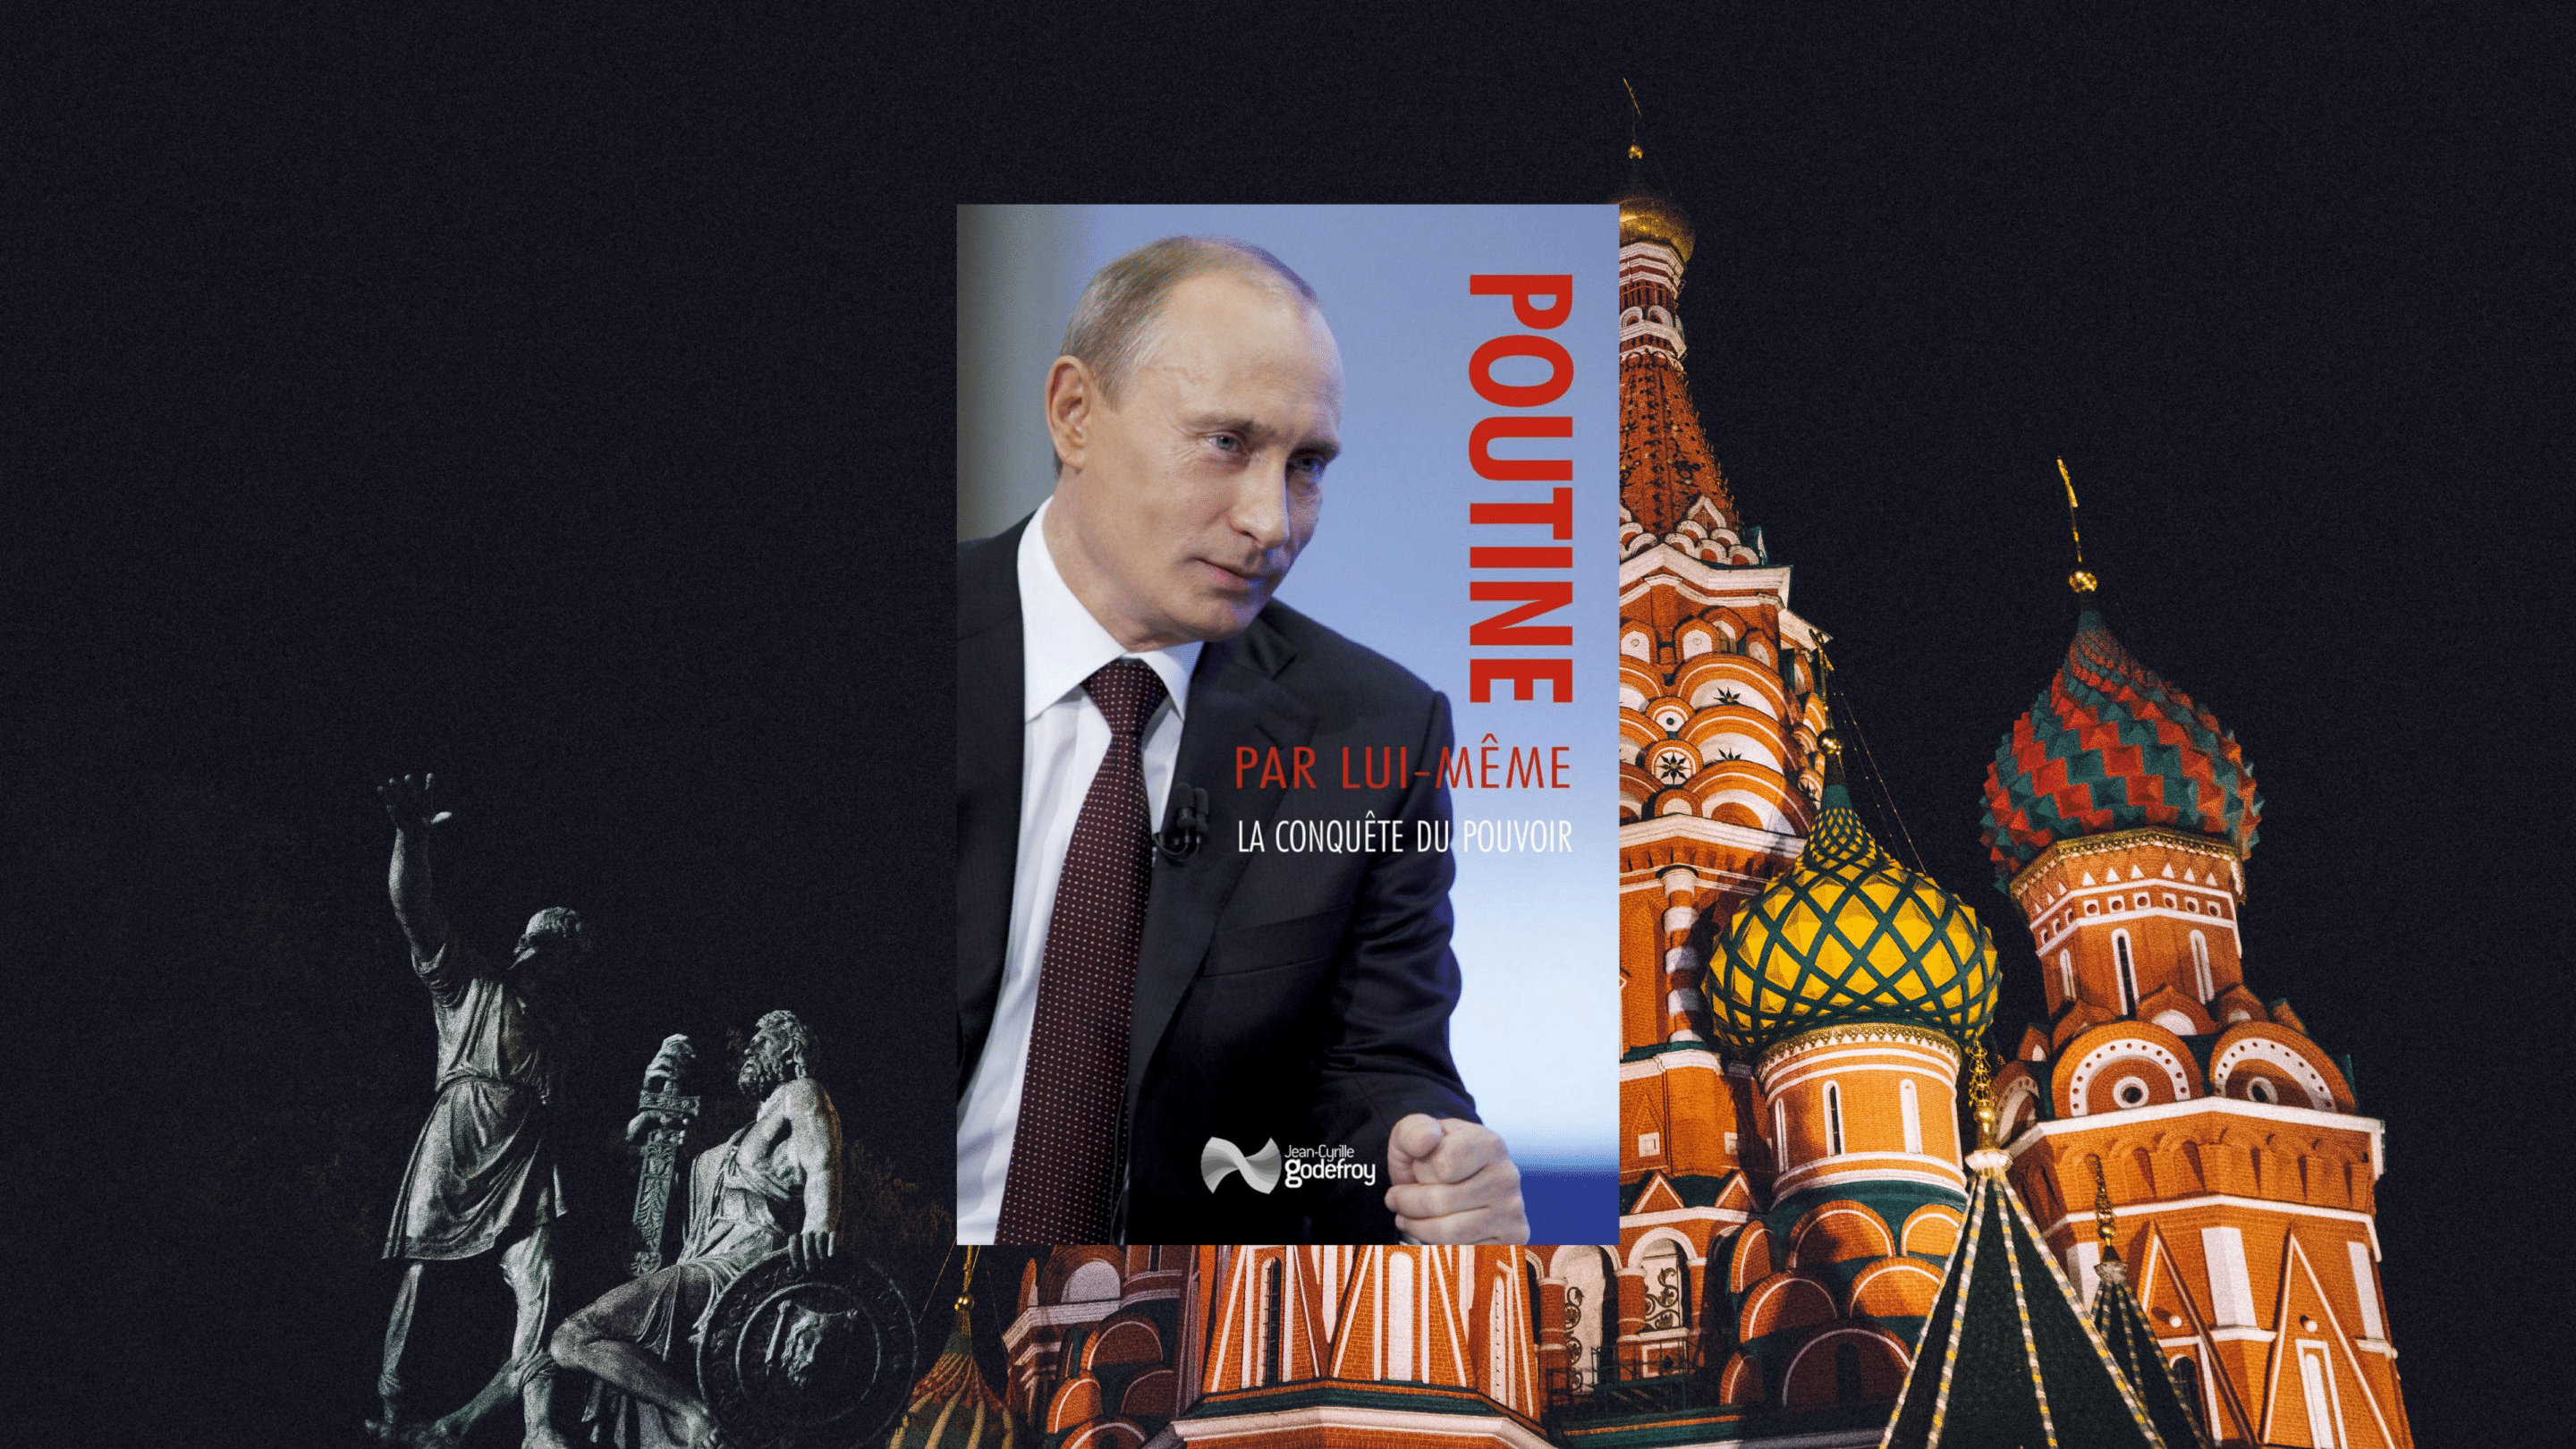 Poutine par lui-même. La conquête, du pouvoir. Crédit photo : Unsplash